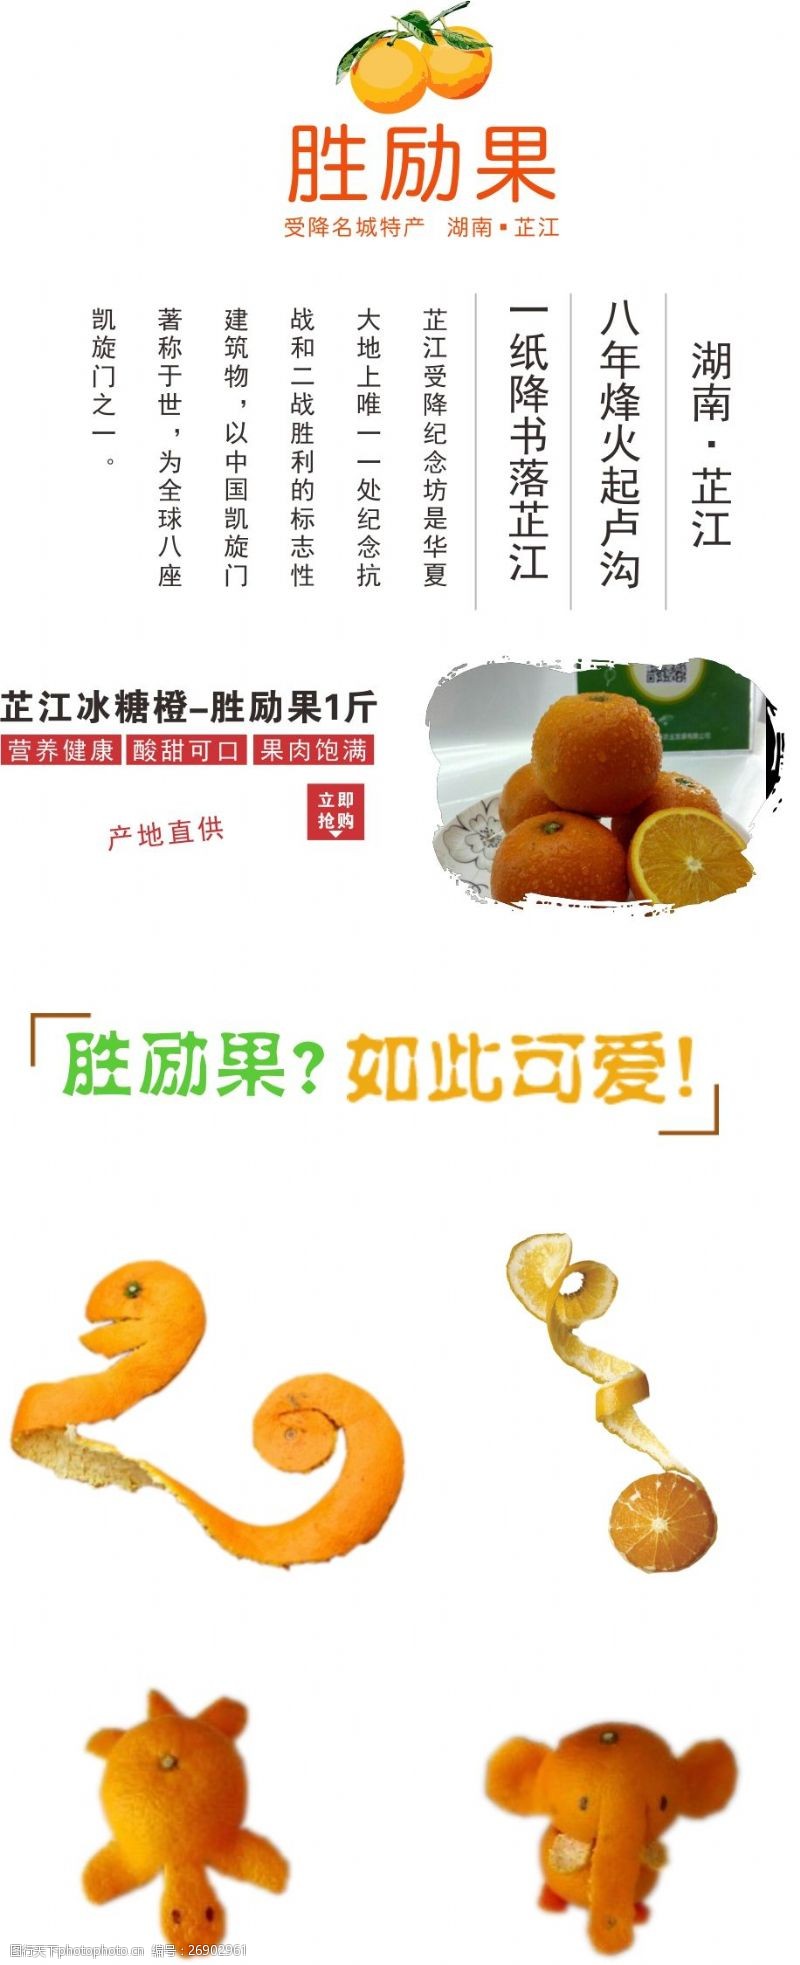 糖果色湖南怀化芷江特产胜励果冰糖橙柑橘